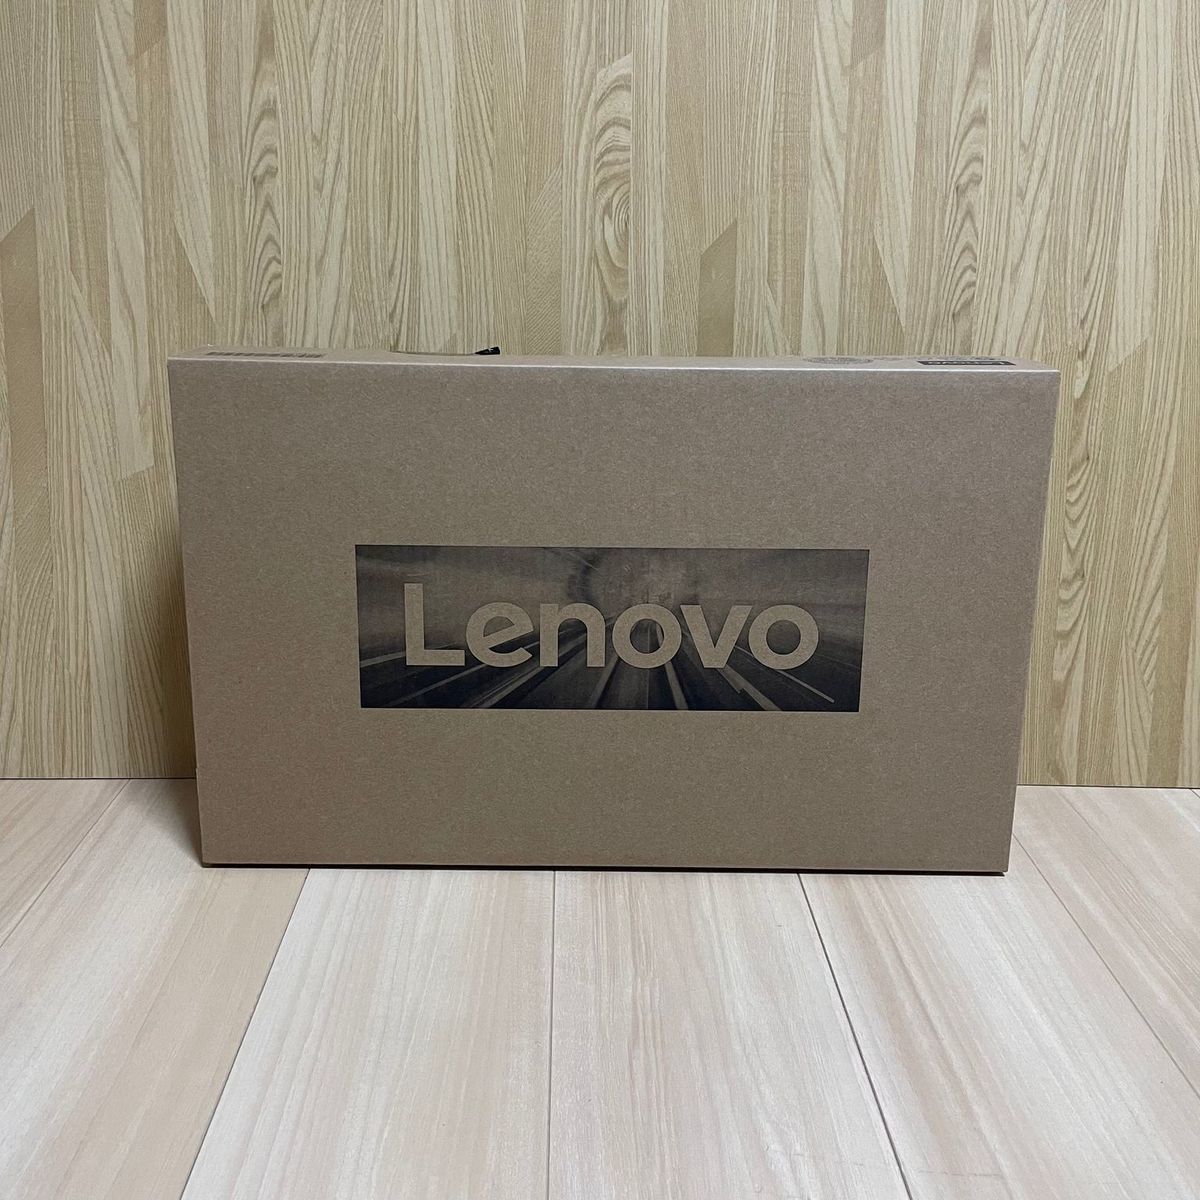 新品 Office2021付 Lenovo IdeaPad Slim 170 15.6型 FHD IPS / Ryzen 7 5700U / 16GB メモリー / 512GB SSD / 追加オプション可能_画像8